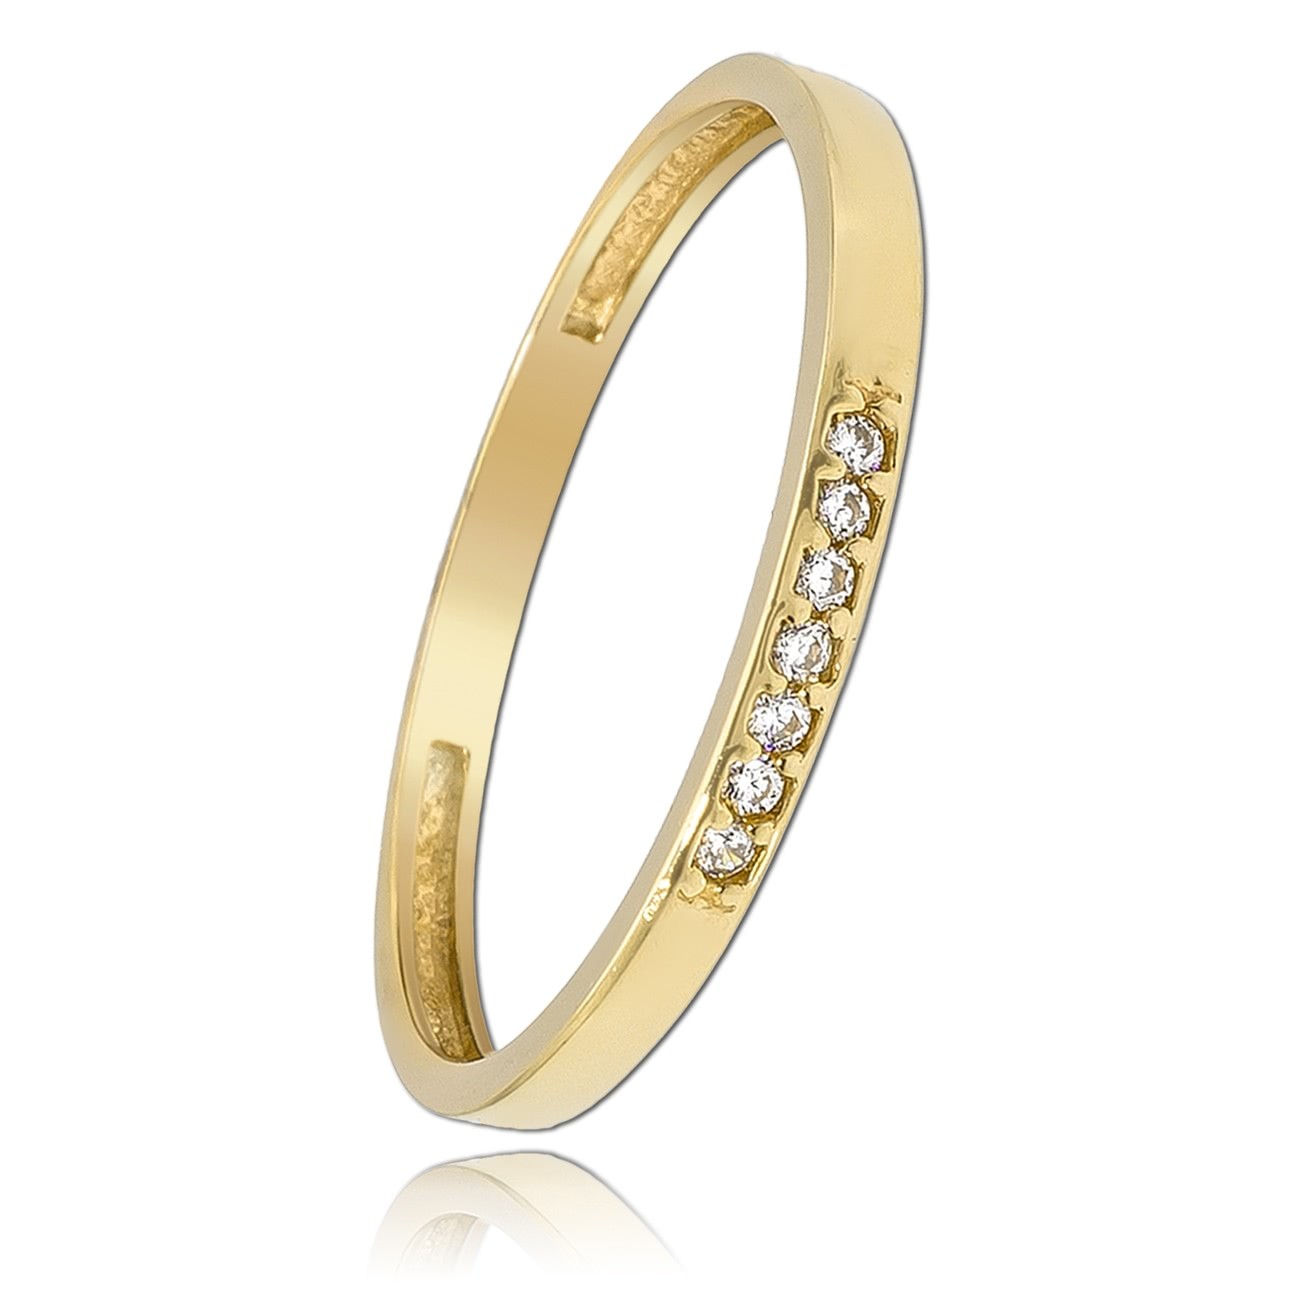 Balia Damen Ring aus 333 Gelbgold mit 7 Zirkonias Gr.54 BGR017G54